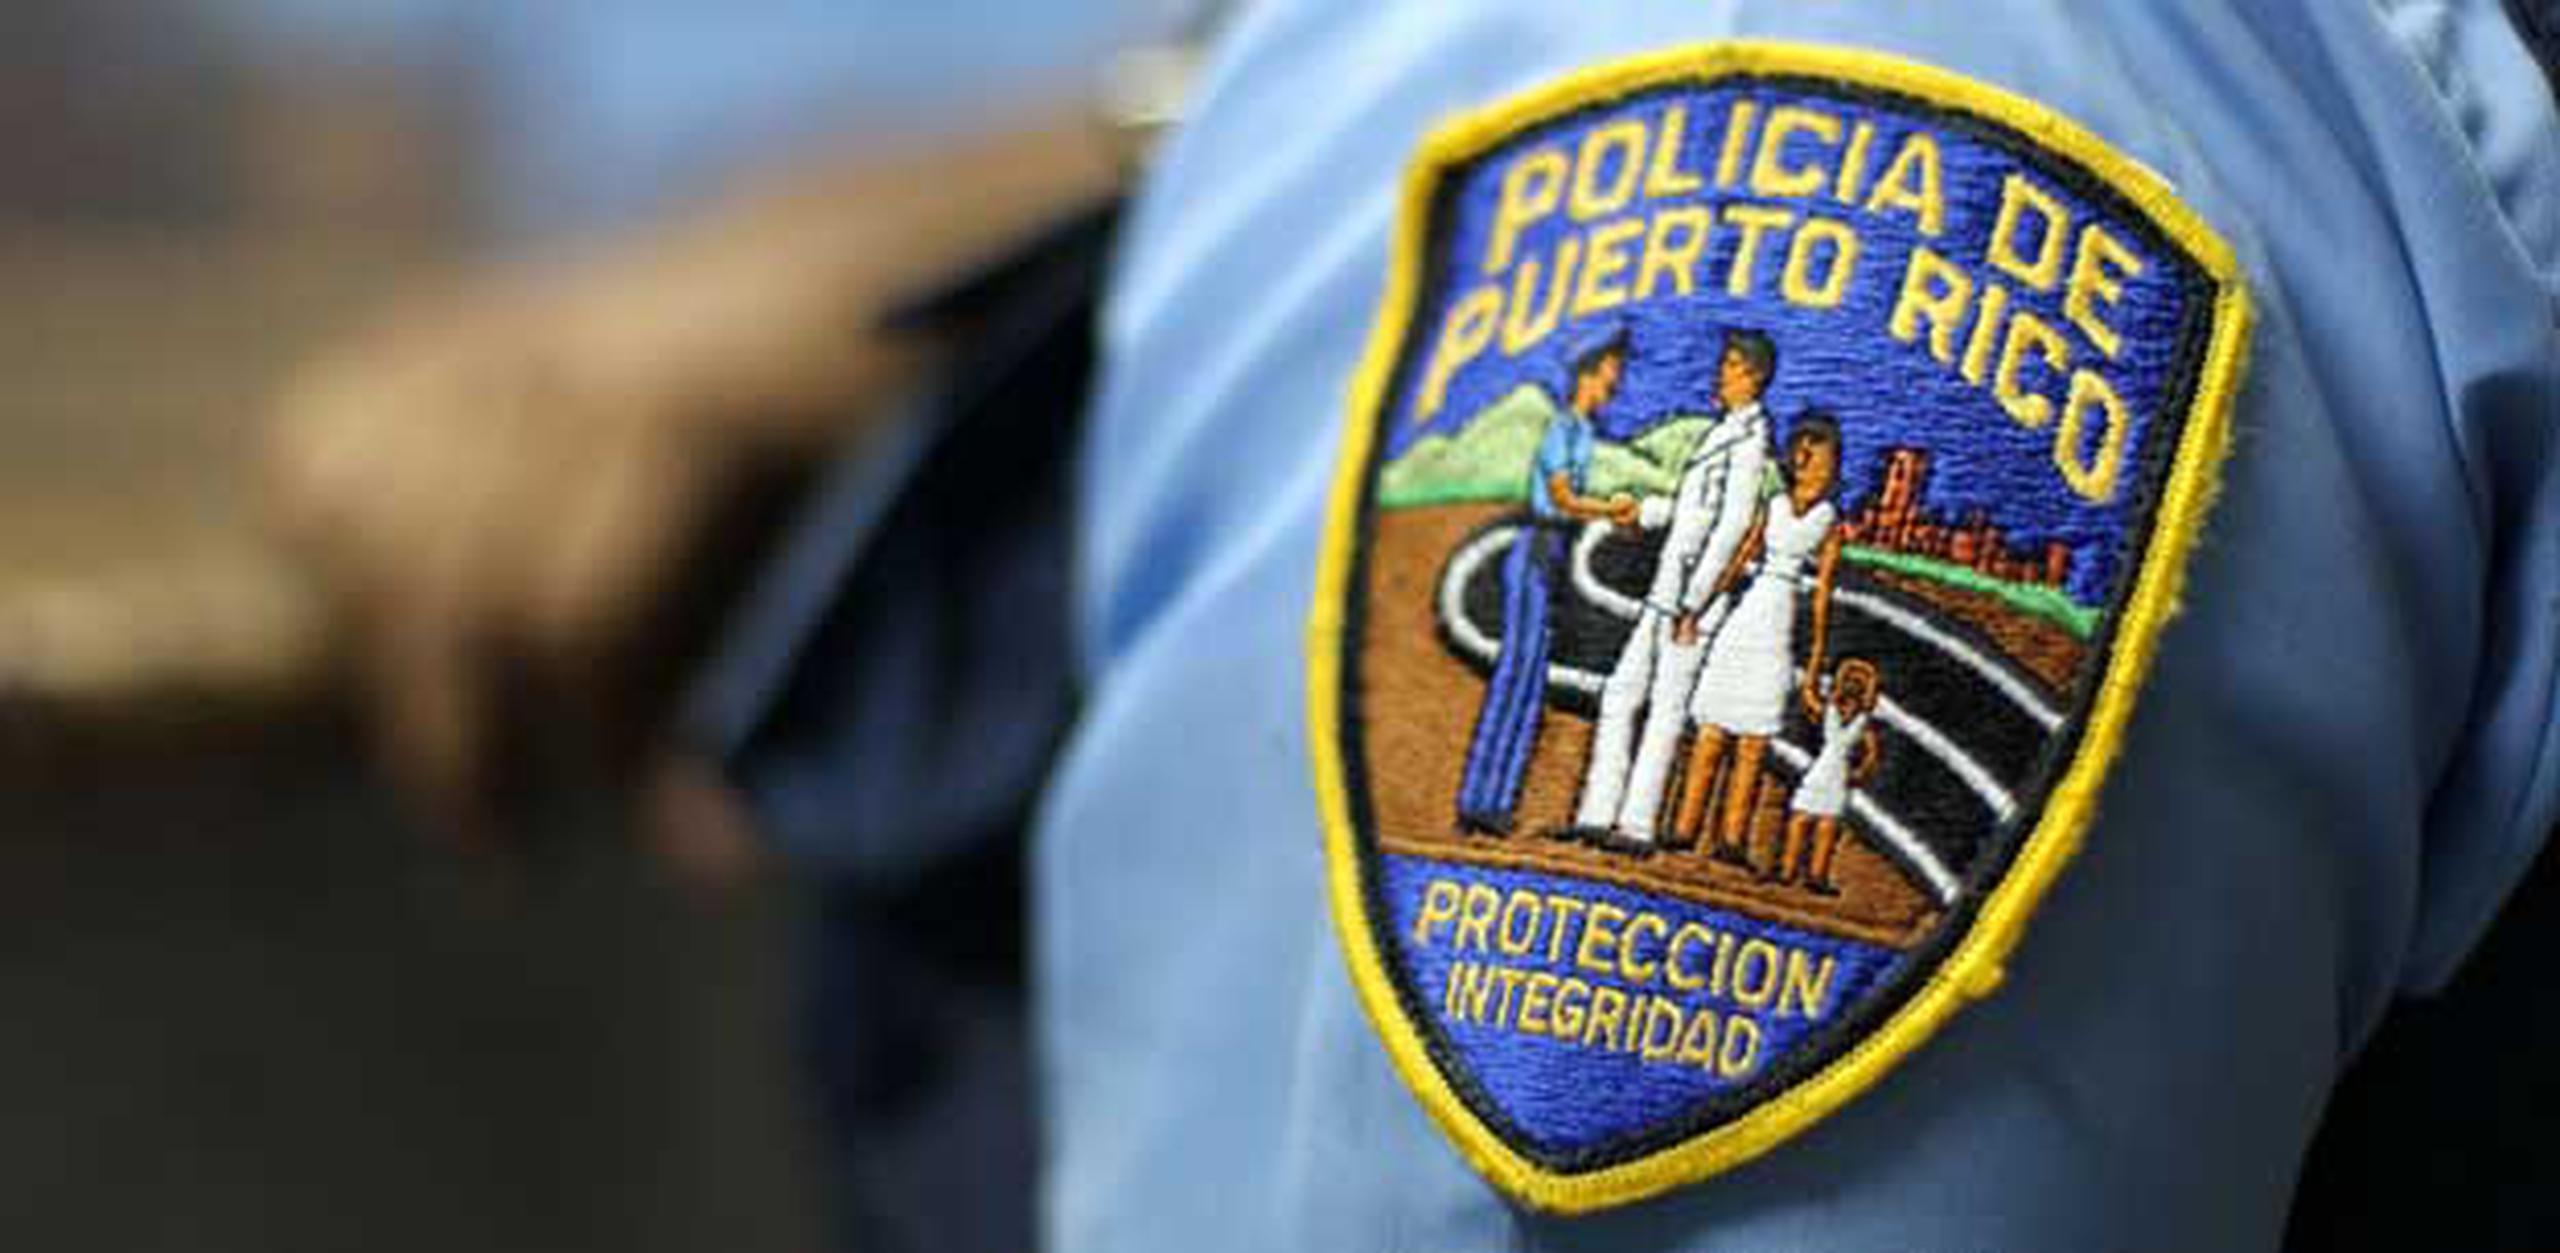 Según la Policía,  informe de novedades, Fernando Batista Román hizo uso de un objeto punzante para amenazar a Carol Ortiz Colón y quitarle su auto Suzuki. (Archivo)